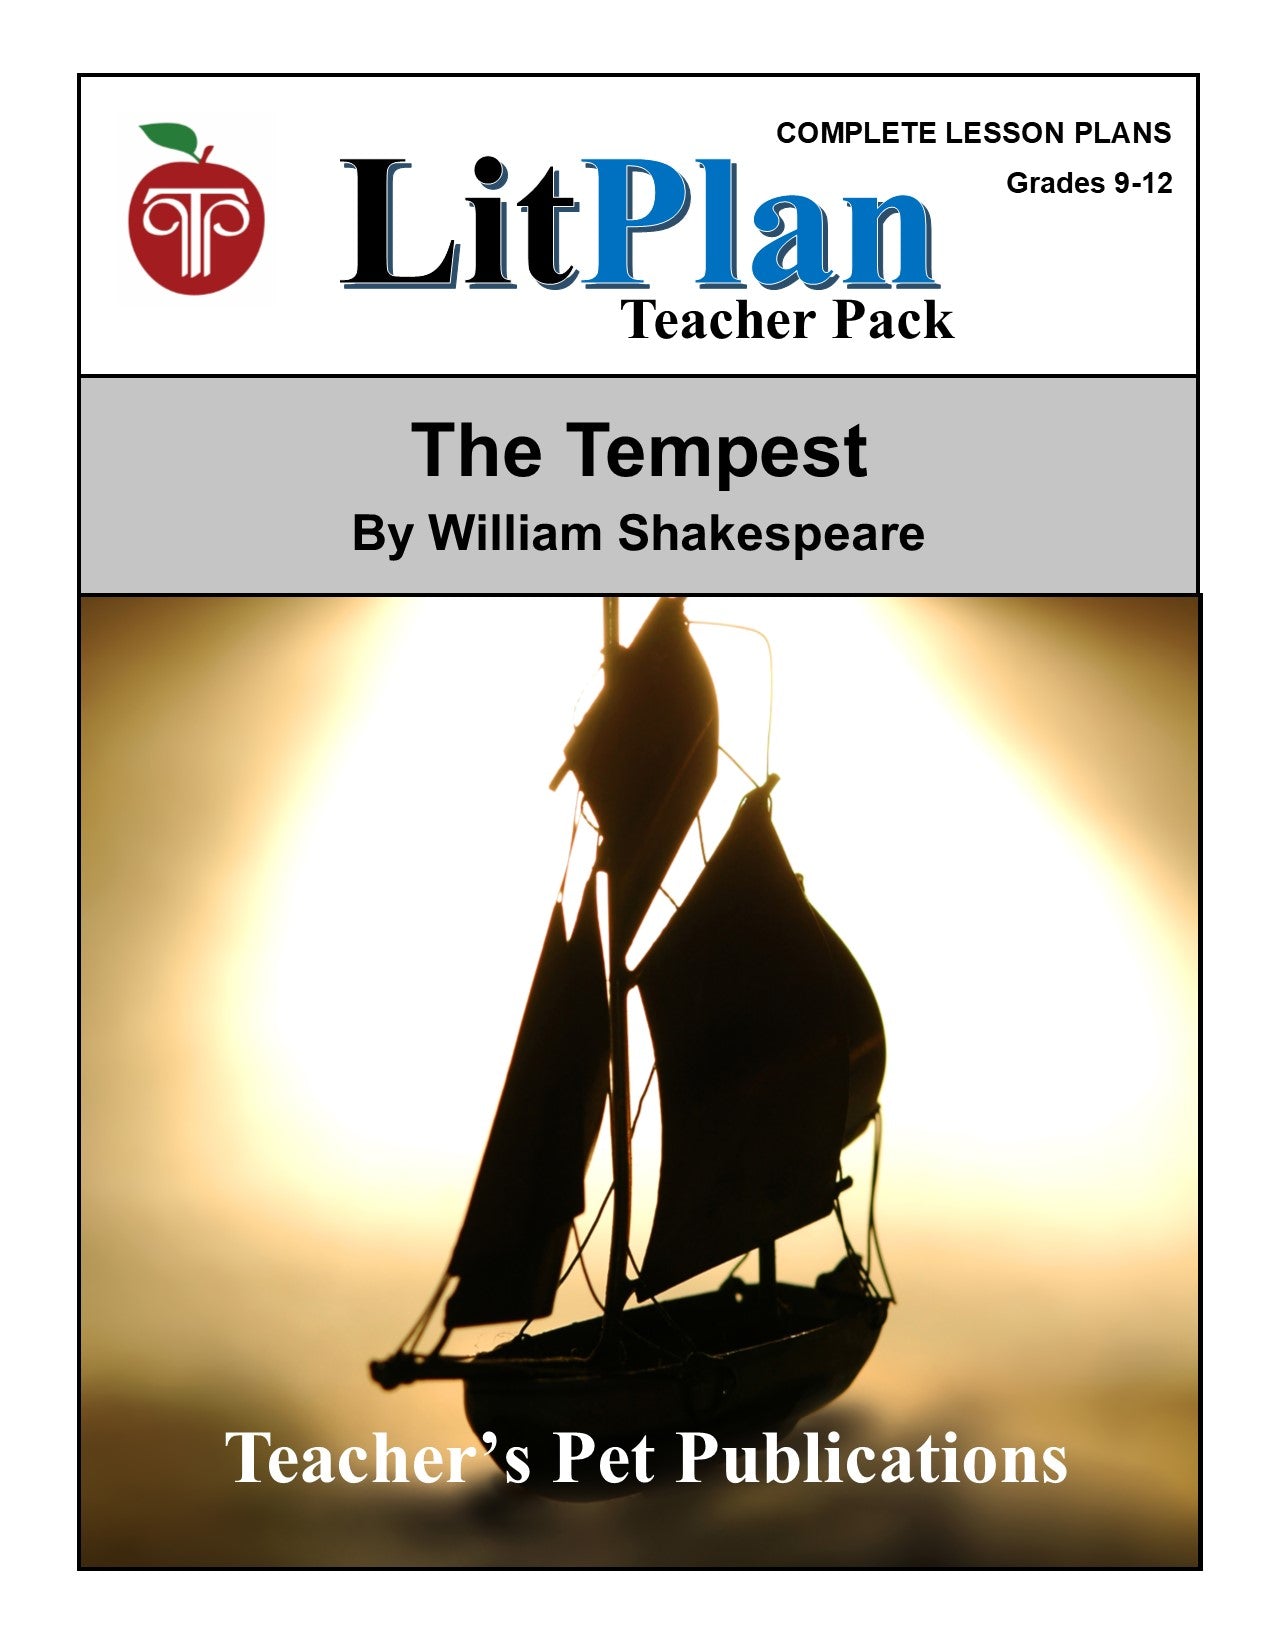 The Tempest: LitPlan Teacher Pack Grades 9-12